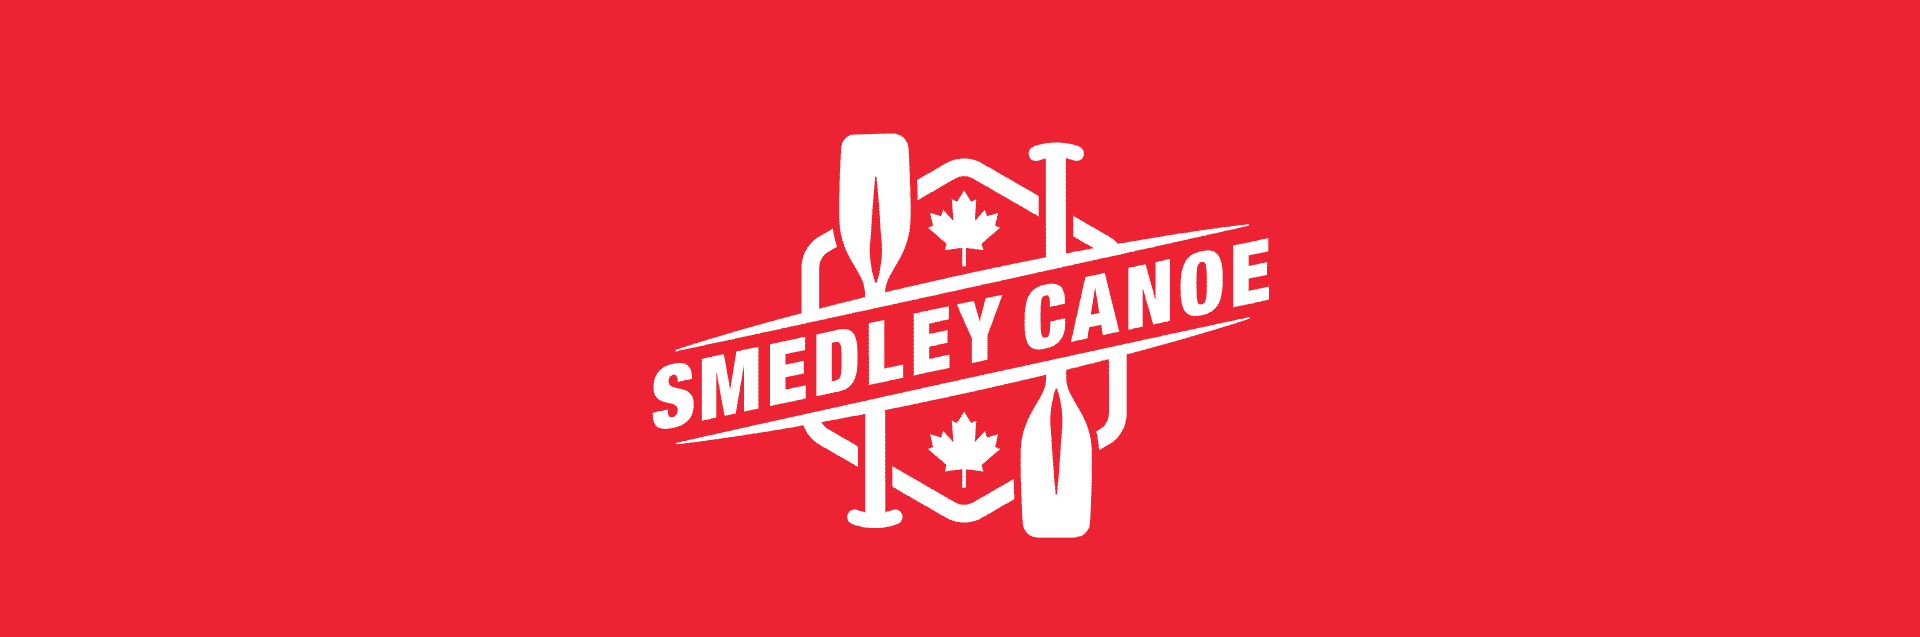 Smedley Canoe Logo